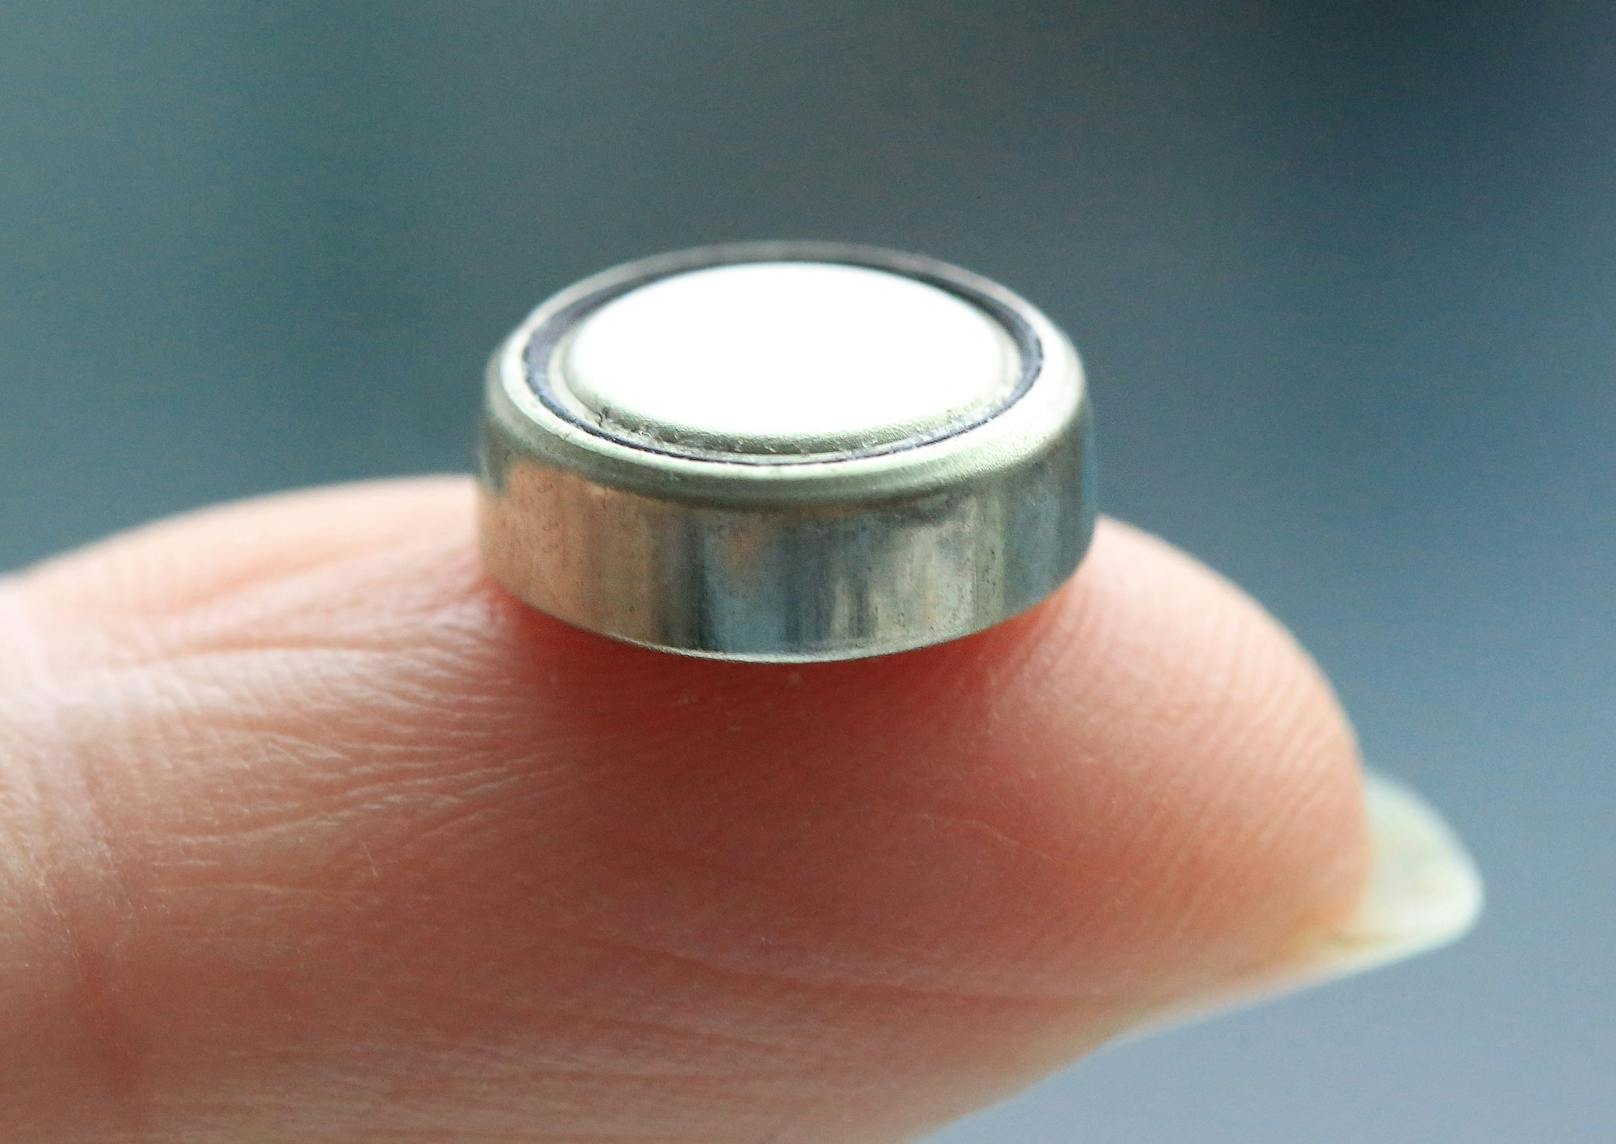 Selbst winzige Knopfzellen wie diese können für Kinder zur Gefahr werden.